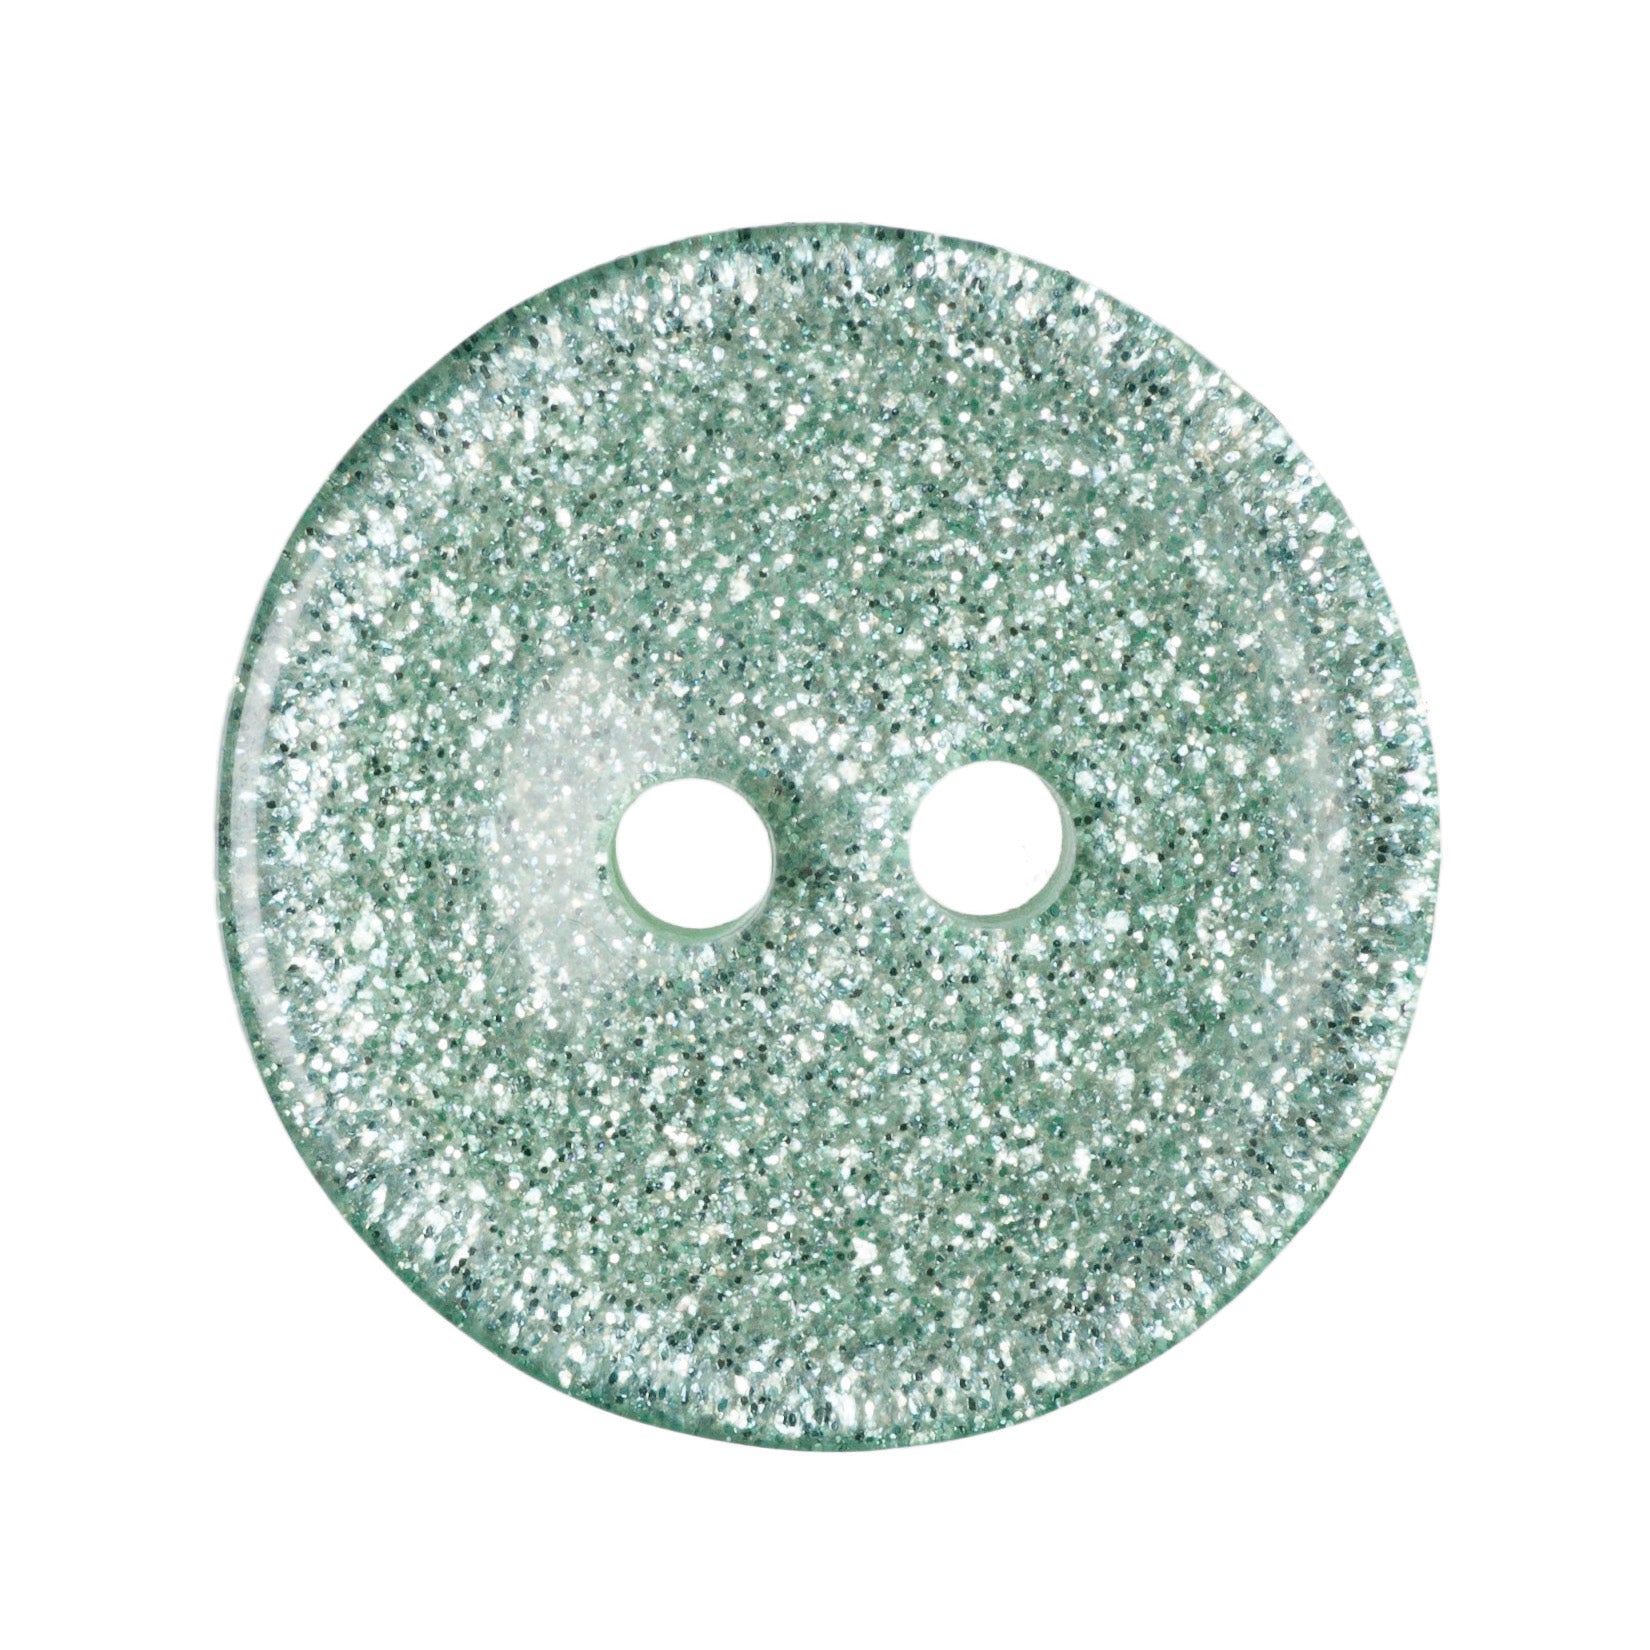 Round Glitter Button - 15mm